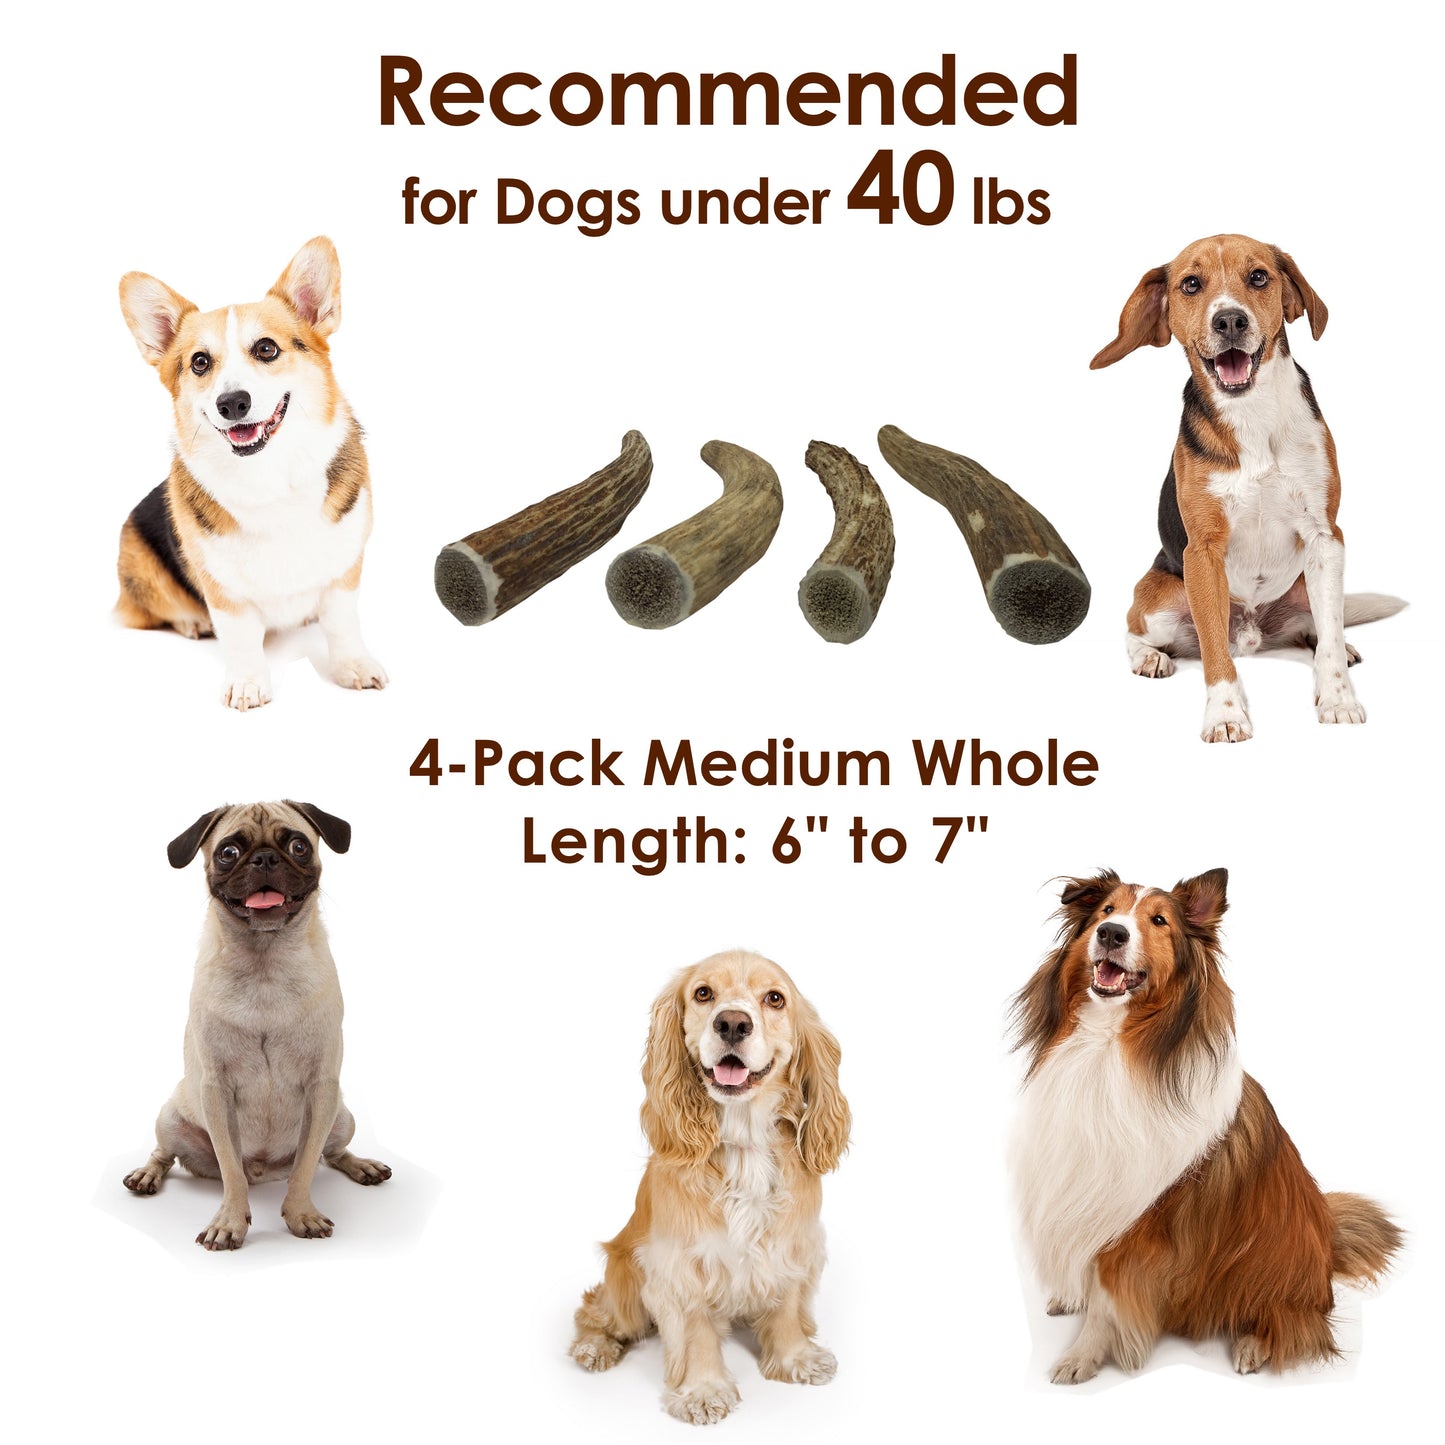 Deluxe Naturals 4-Pack Elk Antler Dog Chew - Medium Whole